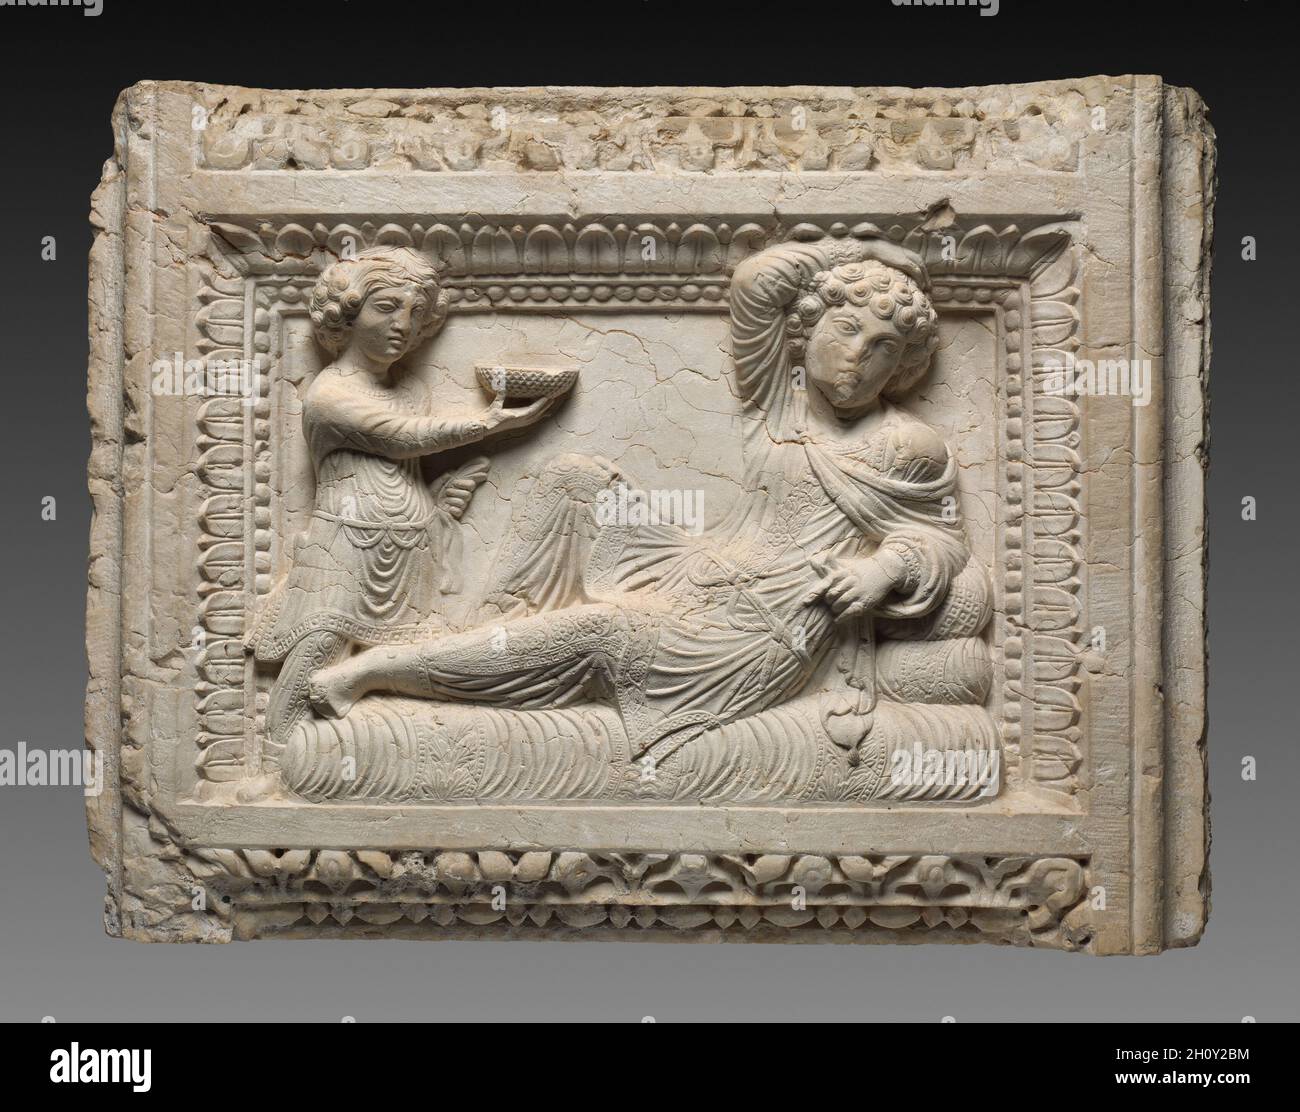 Rilievo tomba, 230. Siria, Palmyra, III secolo. Calcare; totale: 55.3 x 73.7 x 18.5 cm (21 3/4 x 29 x 7 5/16 poll.). Anche se il suo punto di ricerca è sconosciuto, questo rilievo alto quasi certamente una volta ha sigillato una nicchia sepolcrale di un mausoleo a Palmyra. Illustra un mix di tradizioni artistiche romane e partigiane. Adagiato all'interno di un sontuoso bordo di perle e foglie, un uomo ricco si risveglia su un letto ammortizzato di lusso mentre il suo assistente gli offre una ciotola di vino decorata con croccanti. Entrambi sono vestiti secondo la consuetudine Parthiana, indossando pantaloni e tuniche pieghettate, ma la posa languida dell'uomo è presa Foto Stock